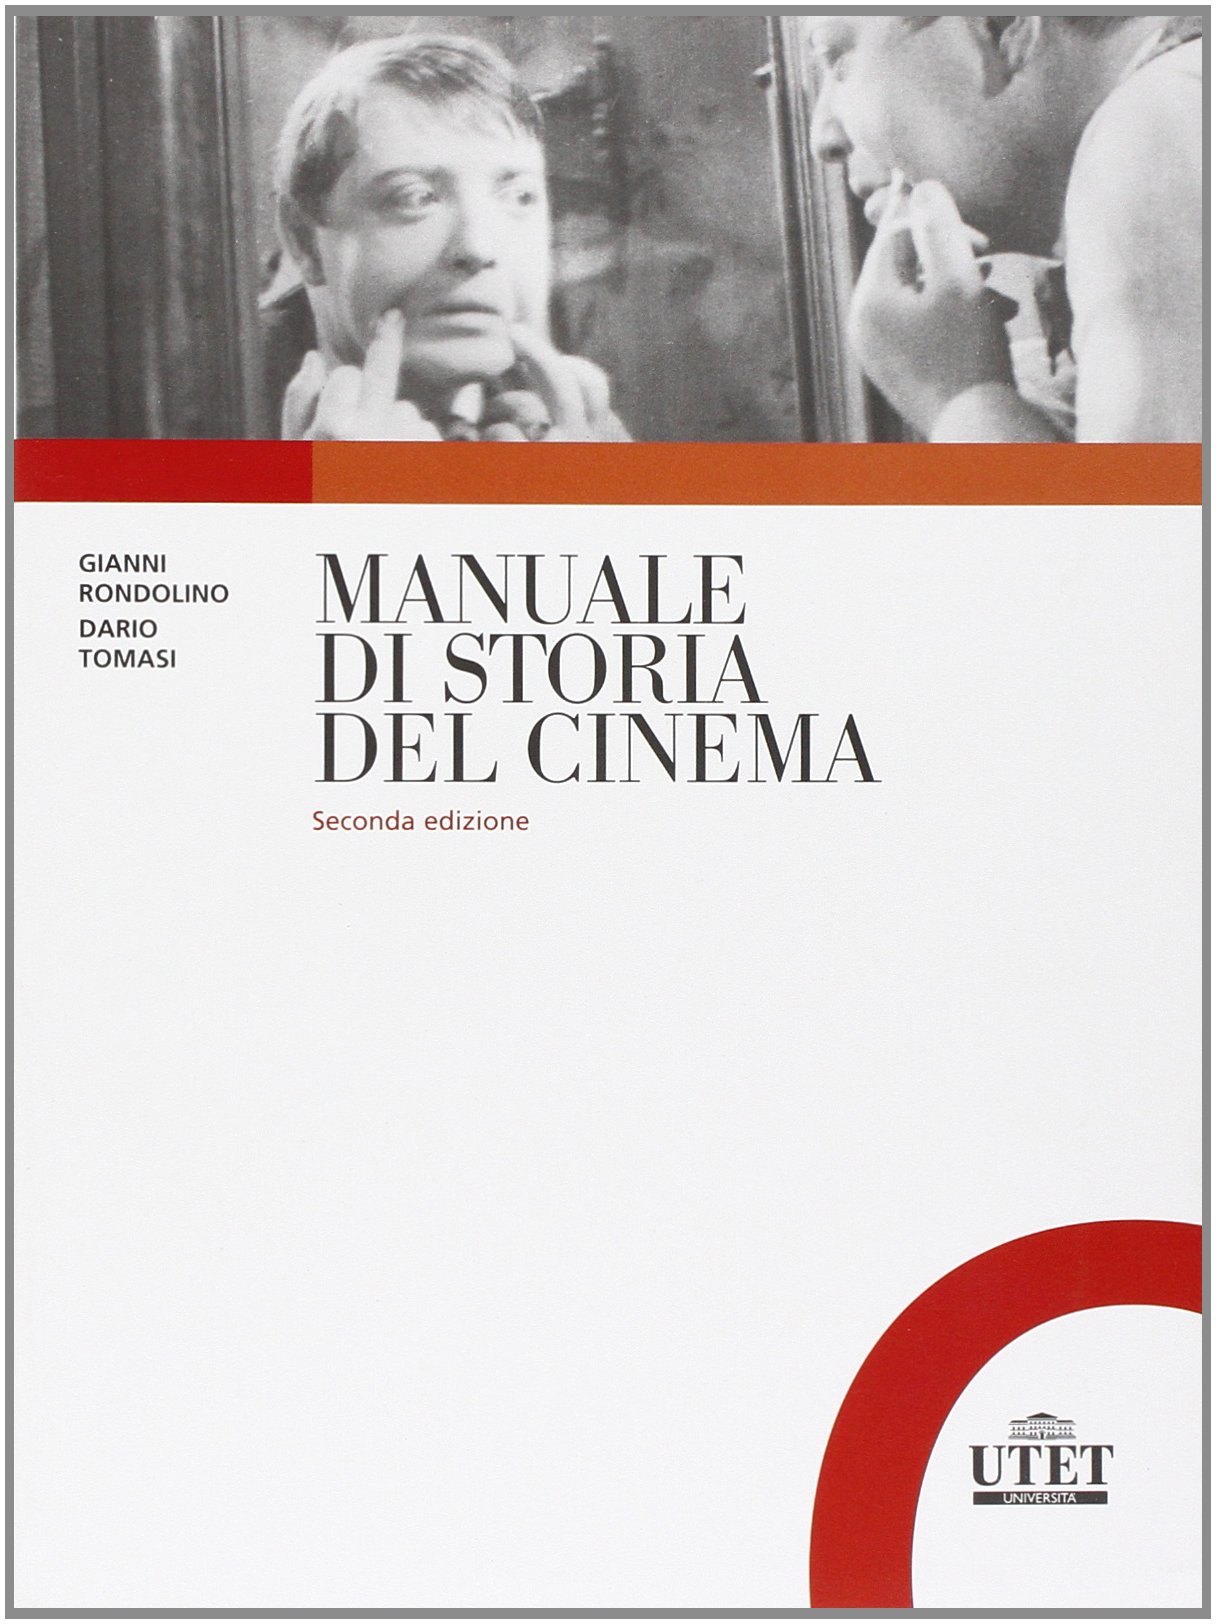 photo du livre Manuale di storia del cinema, Gianni Rondolino/Dario Tomasi